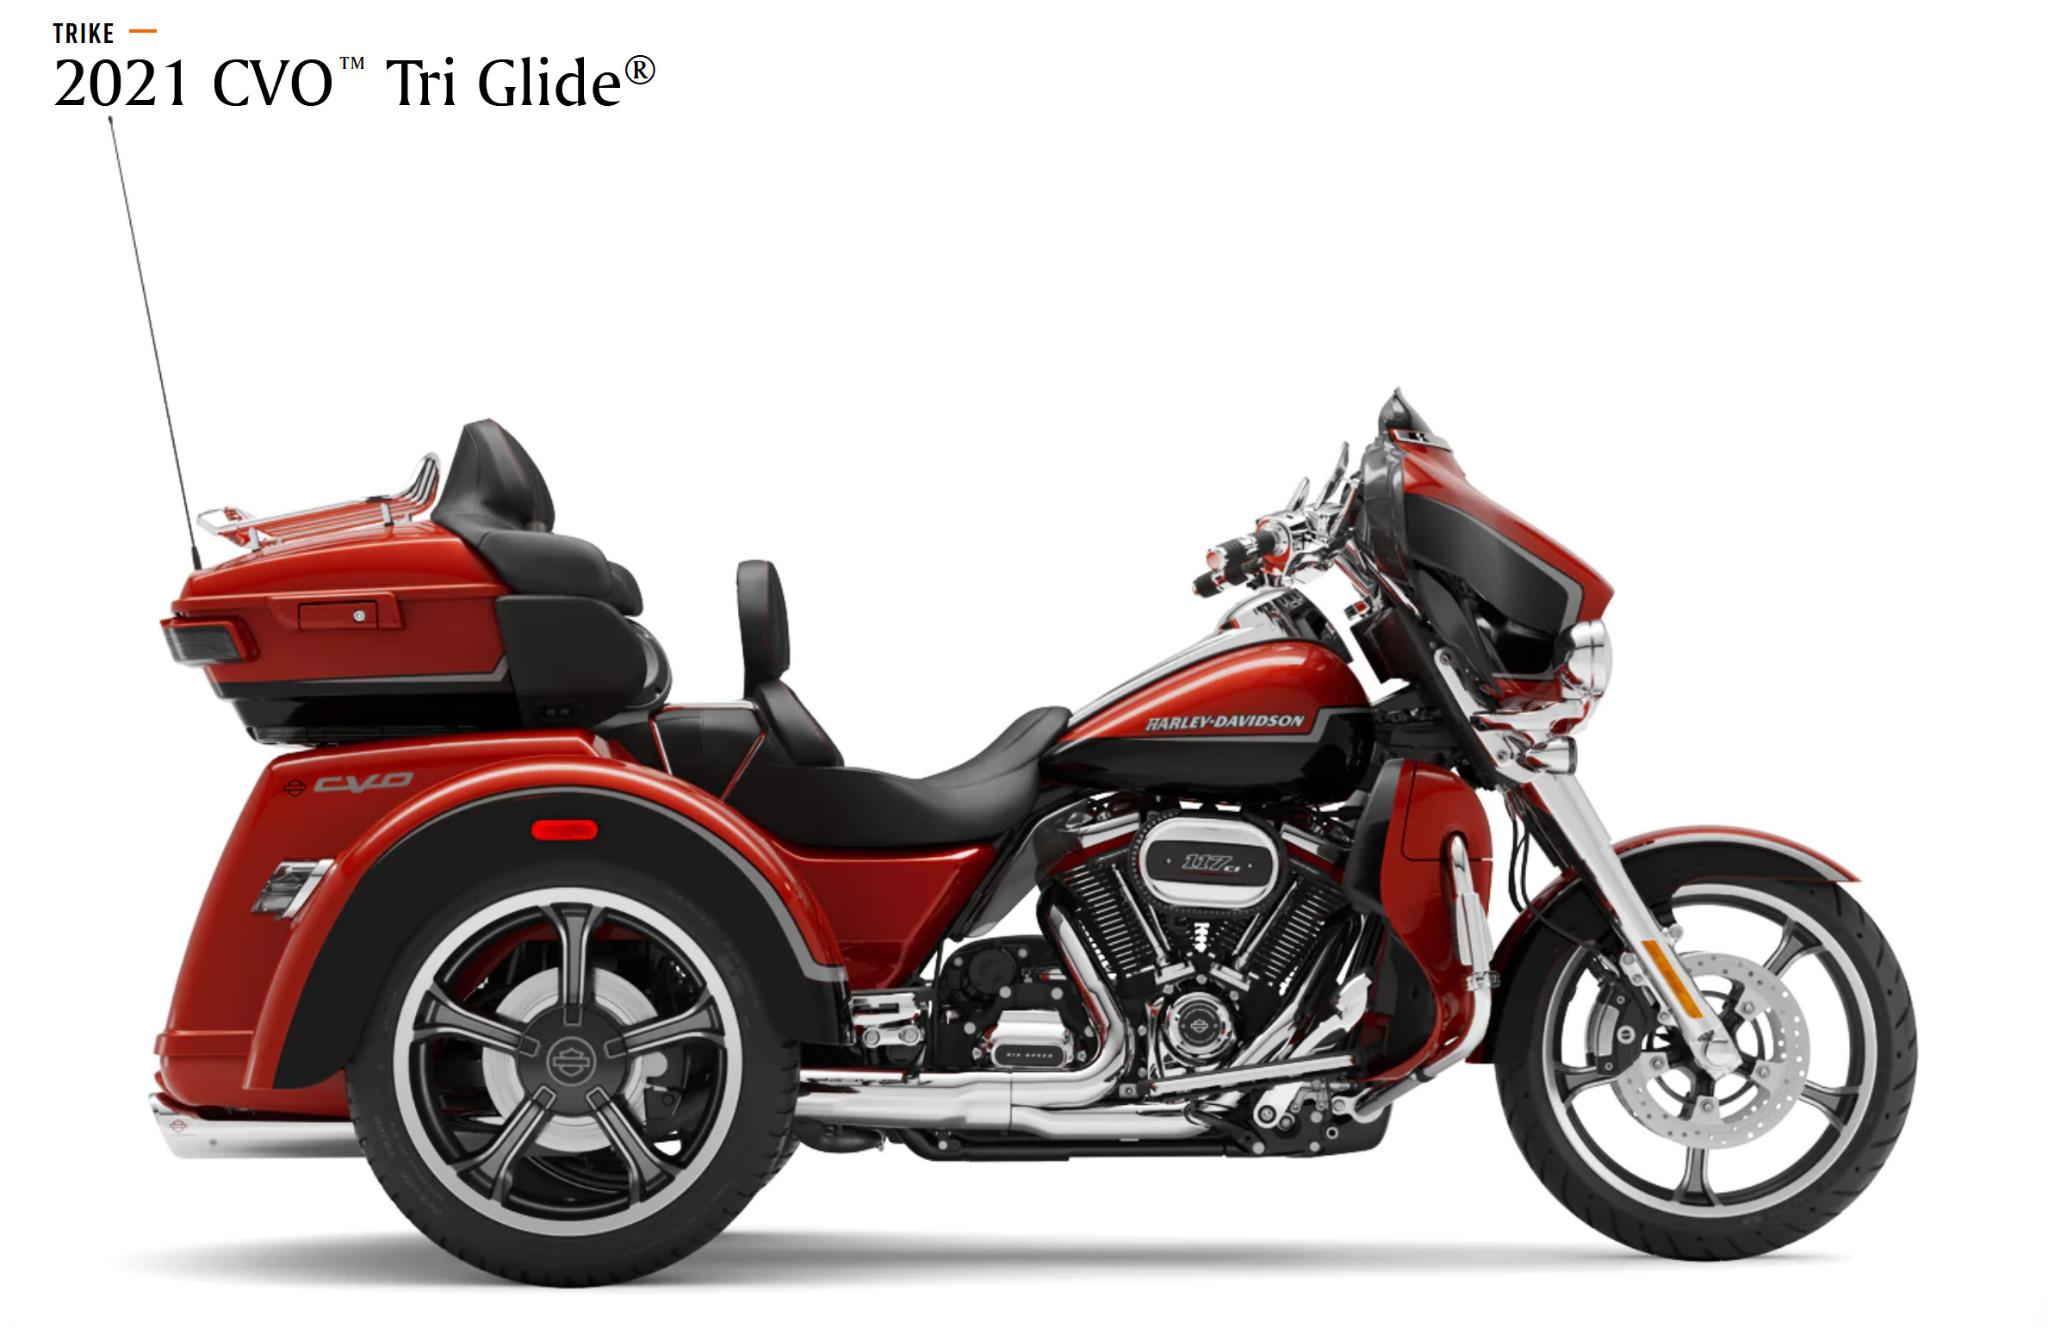 2021 Harley Davidson bike color example